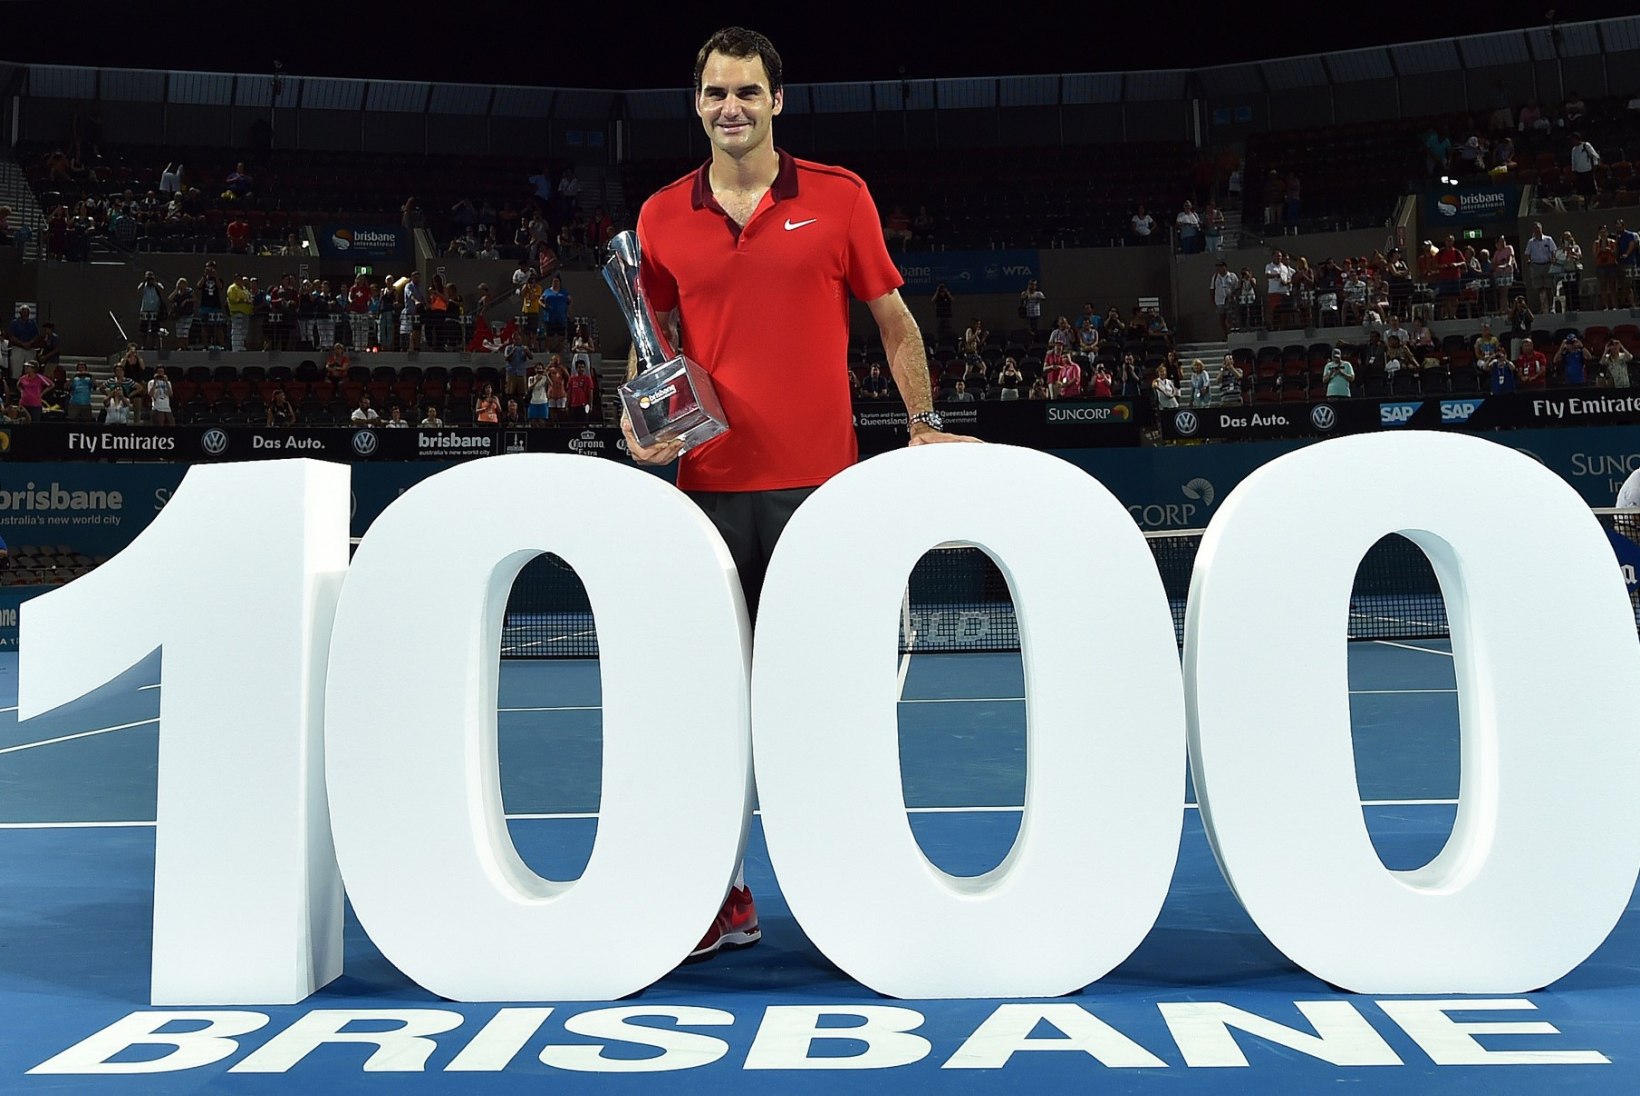 GALERII: Brisbane'is löömatuks jäänud Federer saavutas karjääri 1000. matšivõidu!